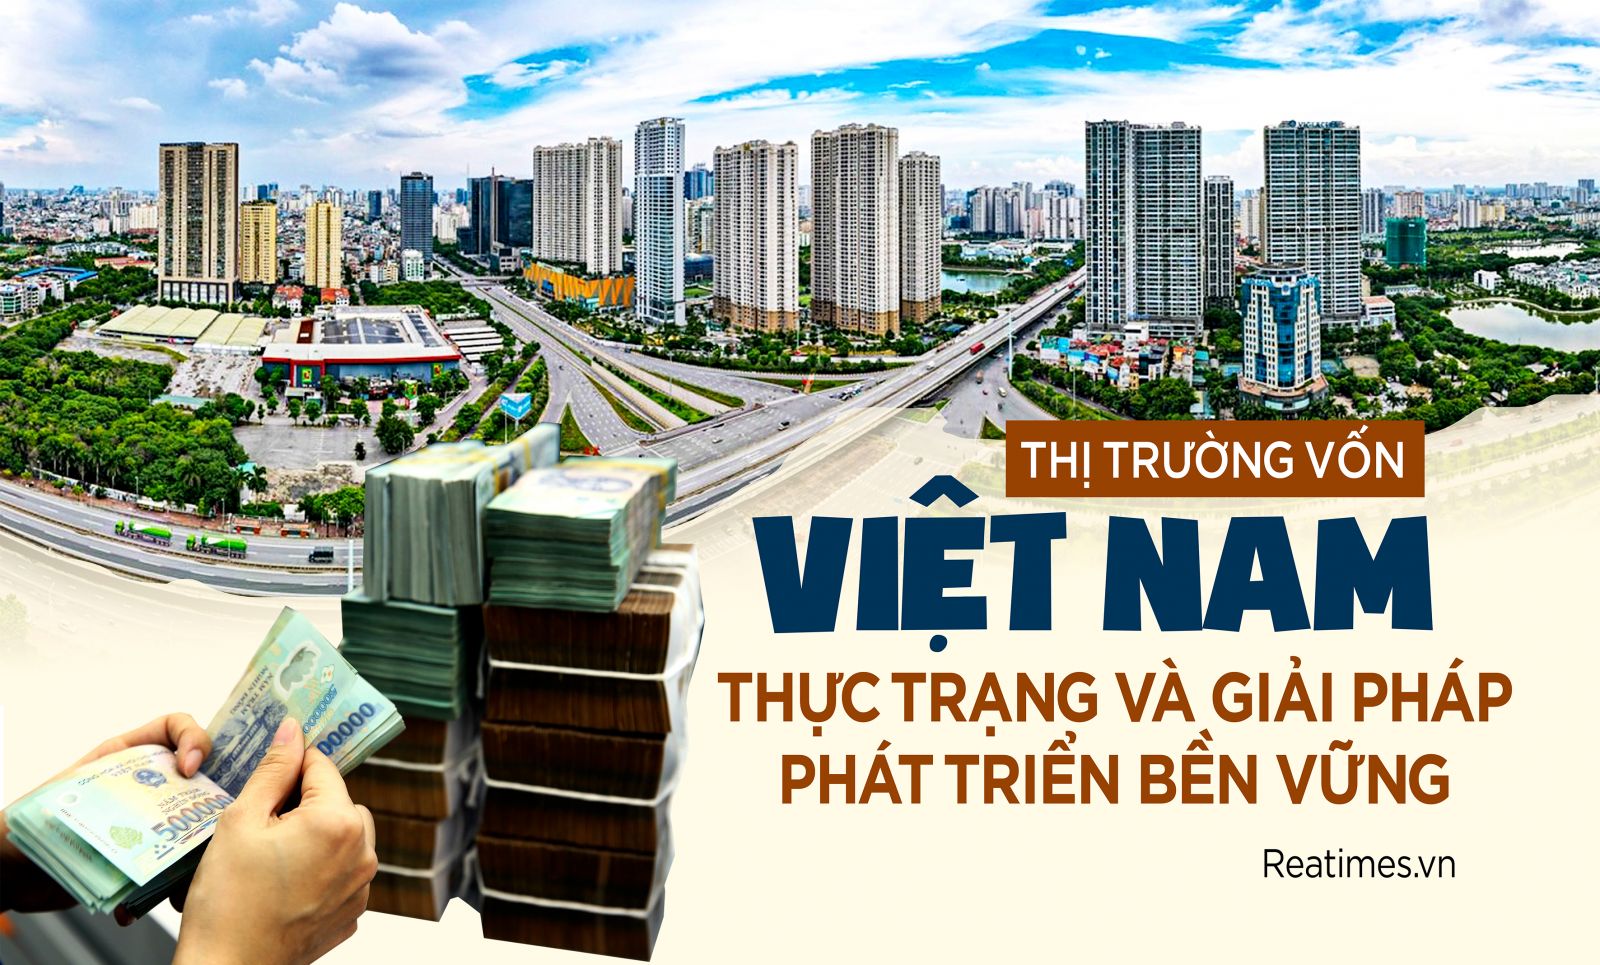 Thị trường vốn Việt Nam - Thực trạng và giải pháp phát triển bền vững